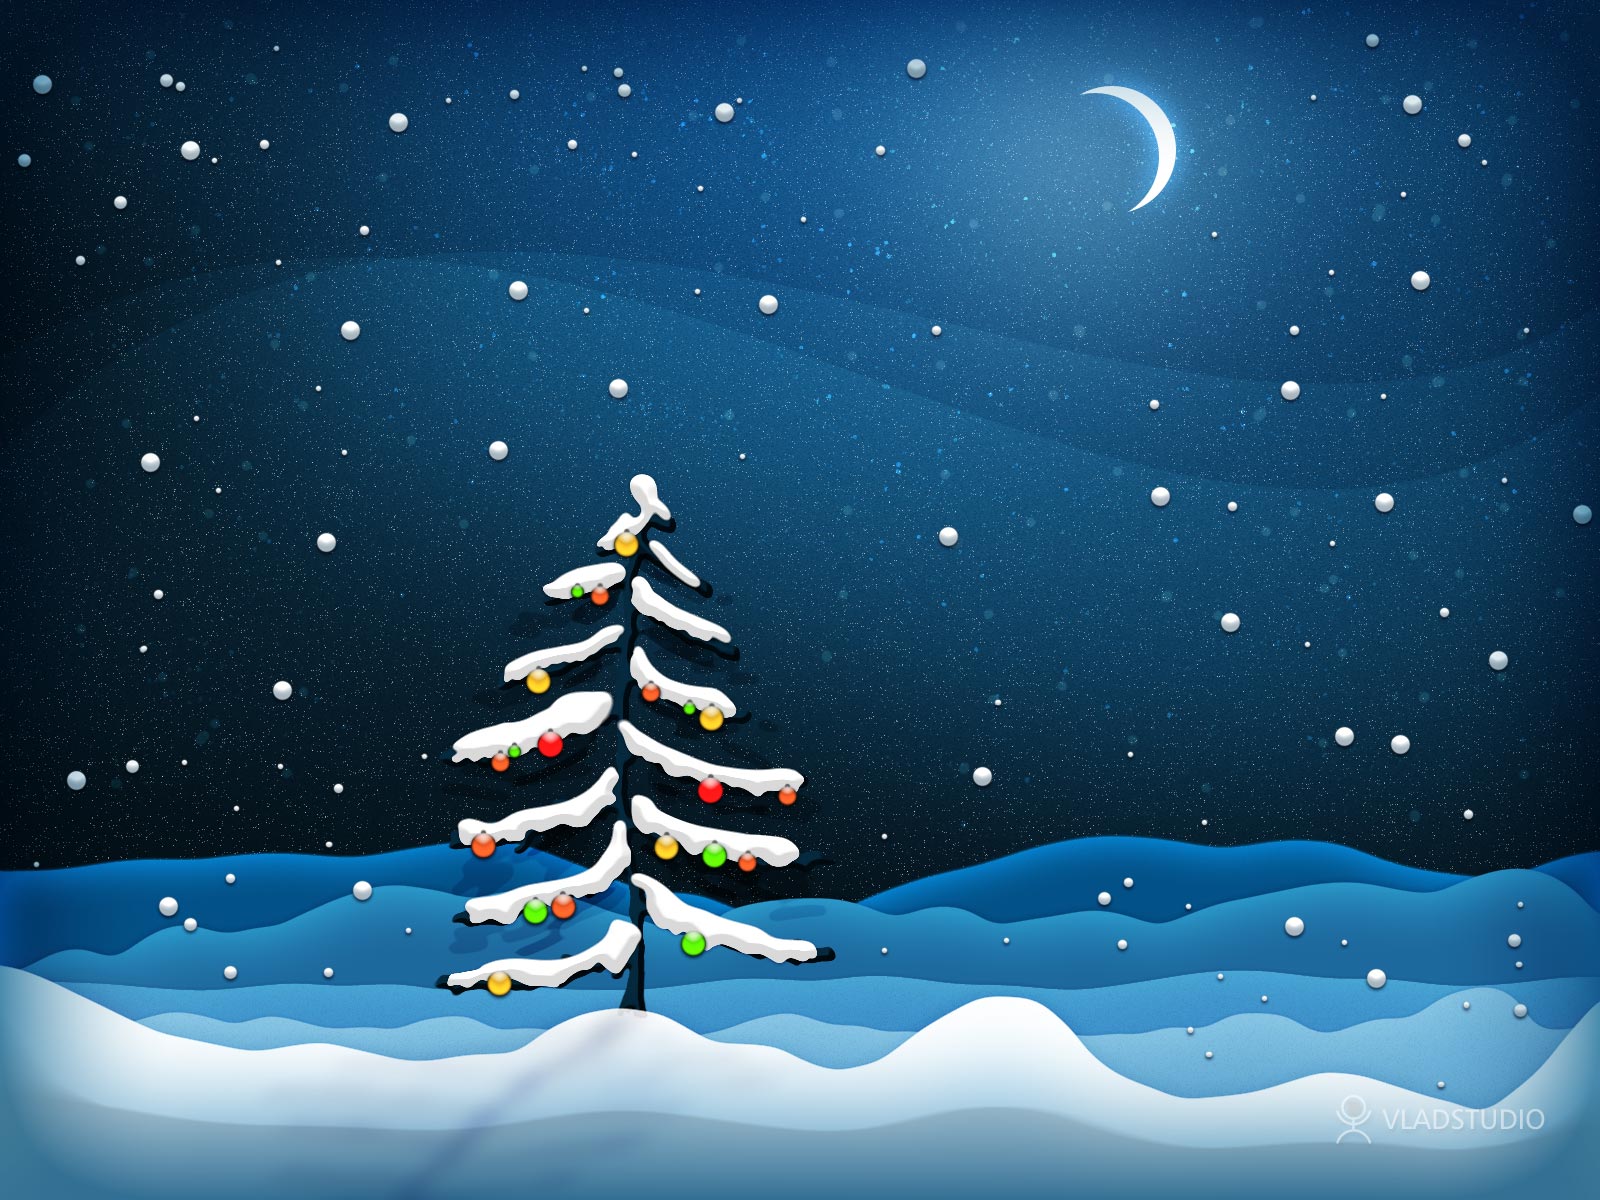 http://3.bp.blogspot.com/_nEmB3Z5F5EM/TRDerpTq2DI/AAAAAAAAI68/KqlEnpWR2xk/s1600/christmas-tree-night-wallpaper.jpg